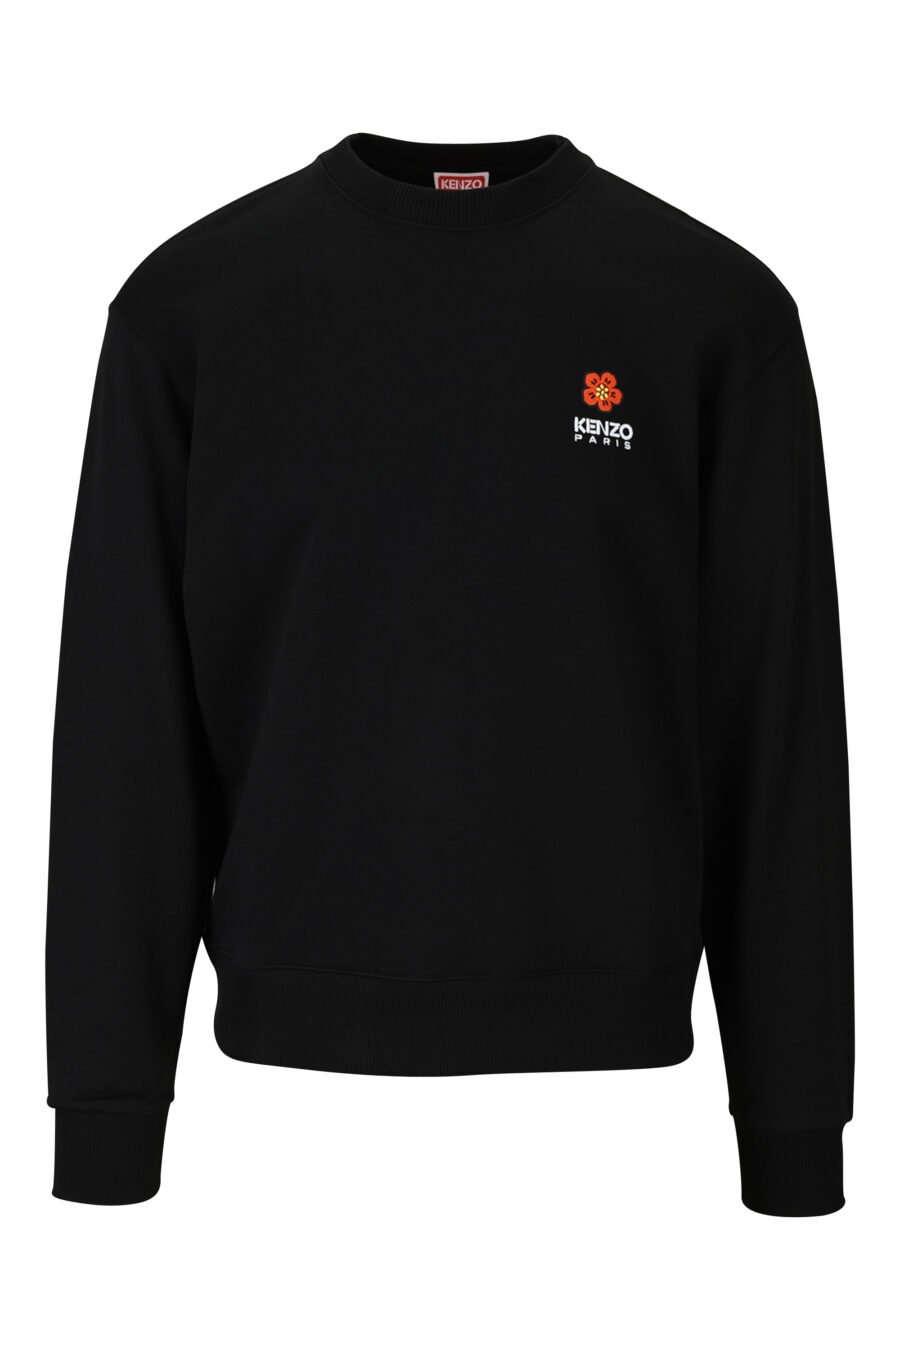 Schwarzes Sweatshirt mit Mini-Logo "boke flower" - 3612230469143